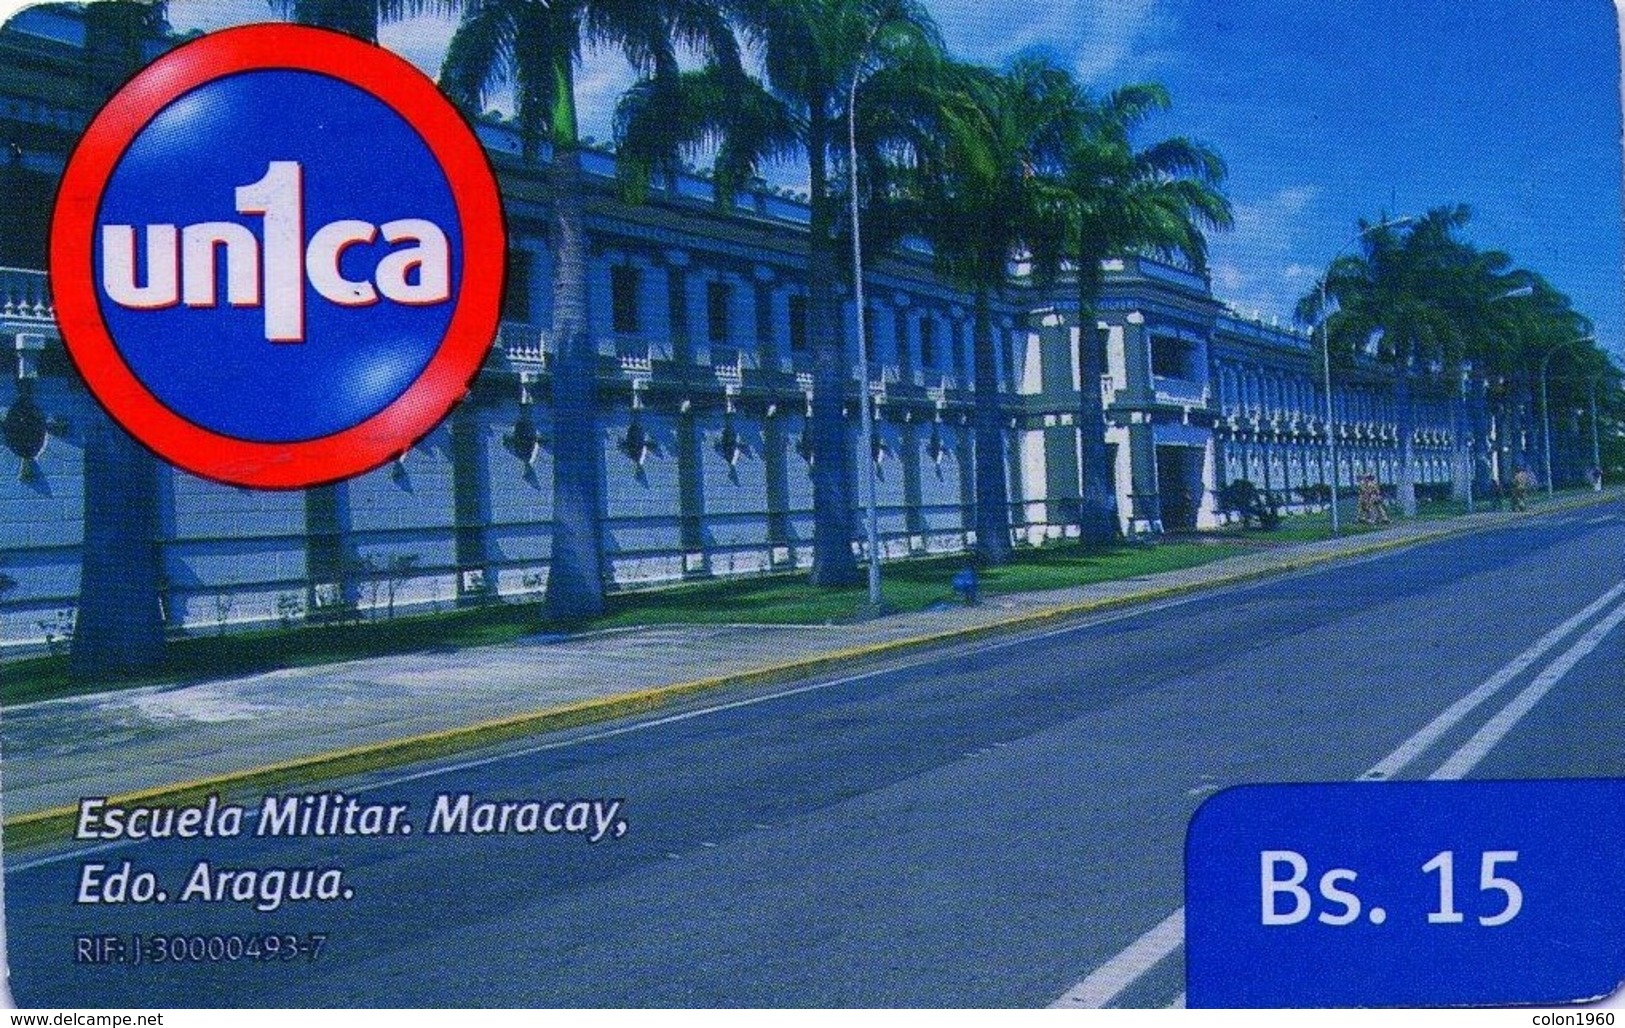 VENEZUELA, GSM-RECARGA. Escuela Militar, Maracay. Edo. Aragua. UI091121. VE-UNICA-U-091121. (280). - Armee